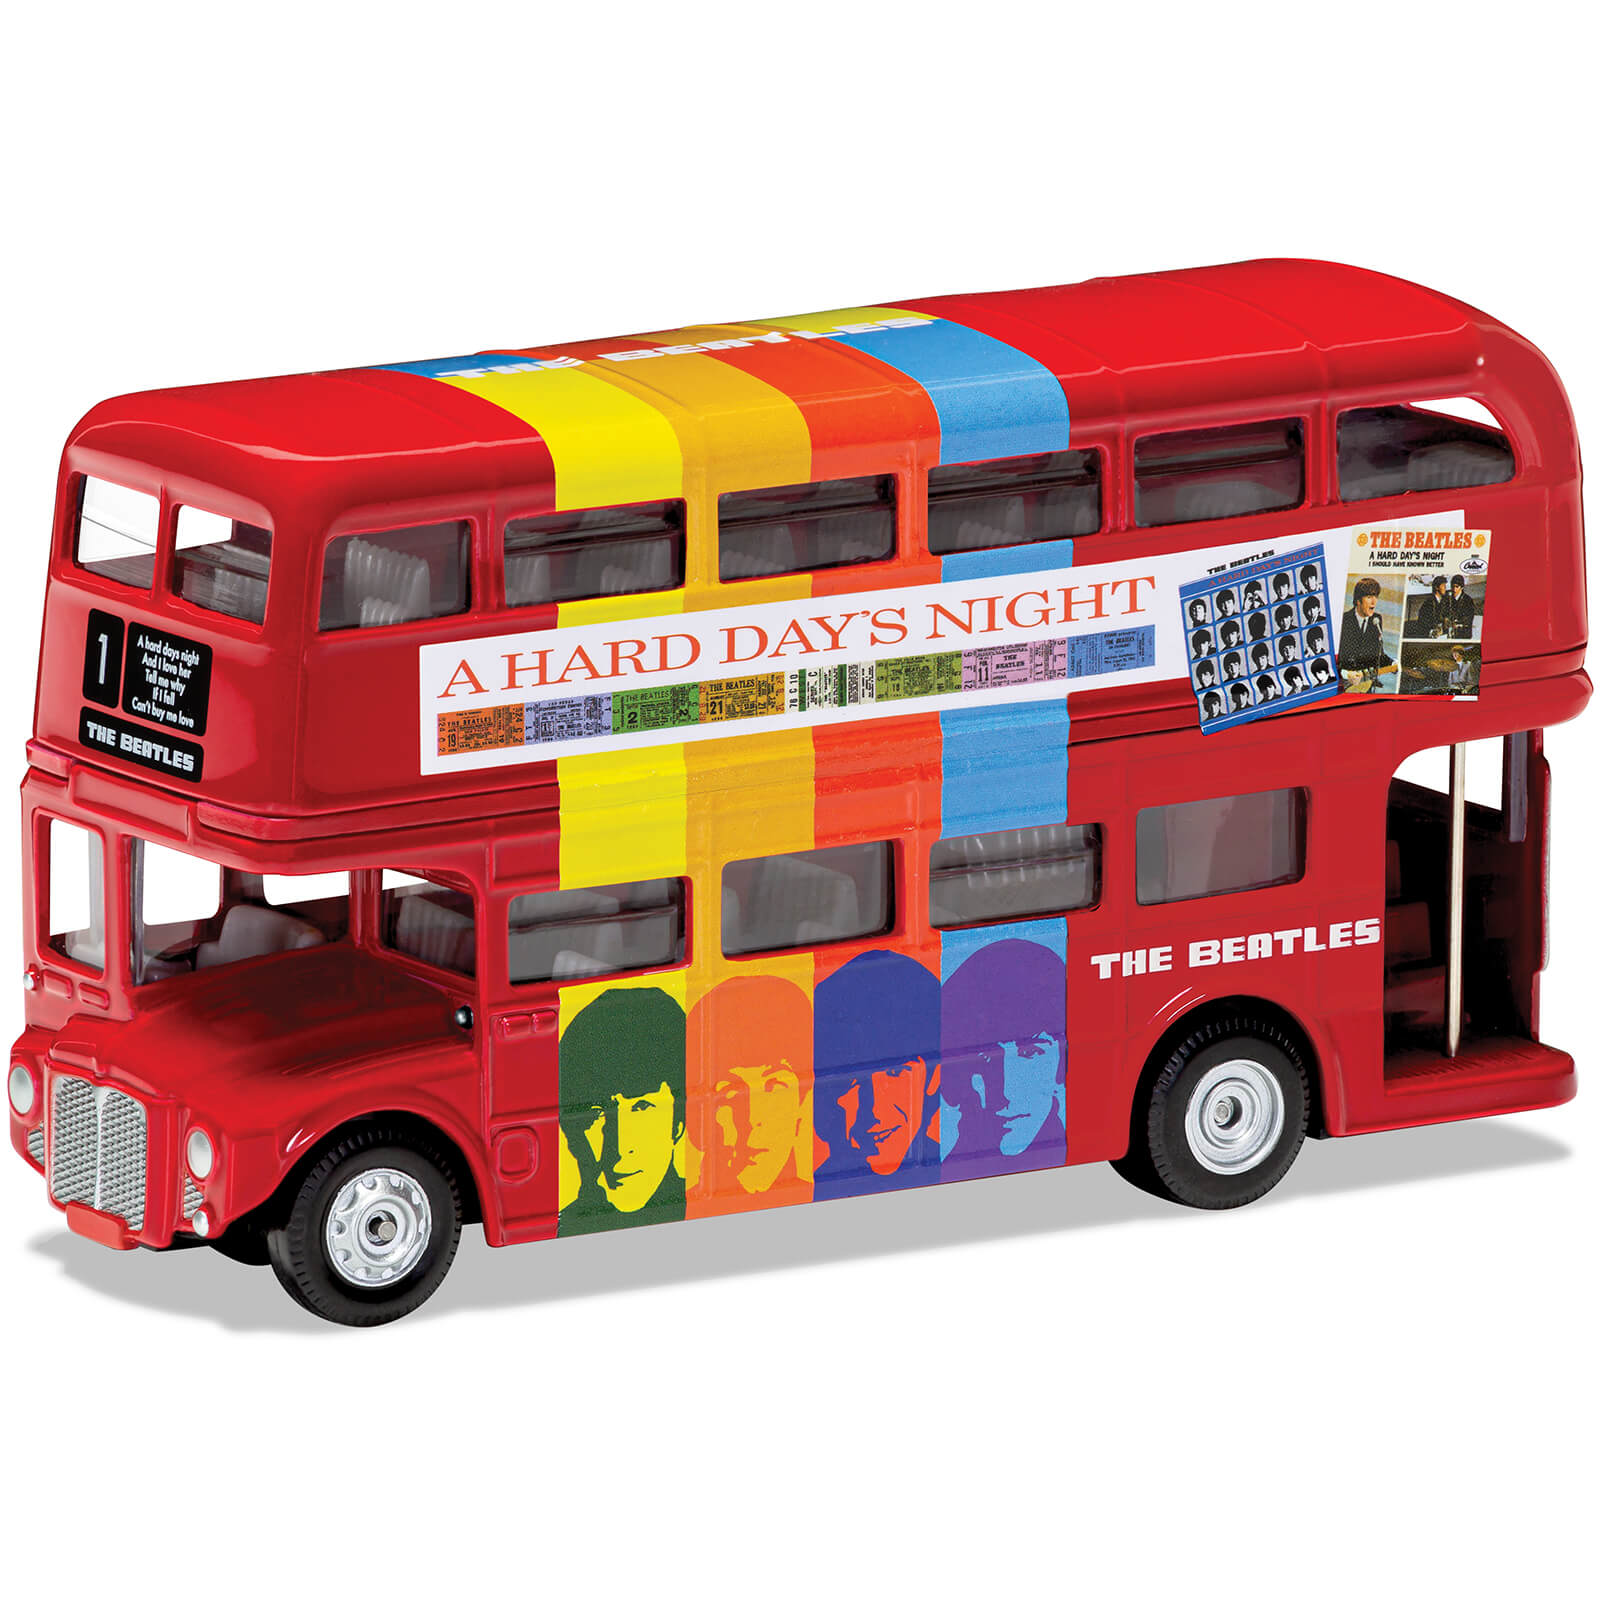 Set de maquetas del autobús londinense de los Beatles A Hard Day's Night - Escala 1:64